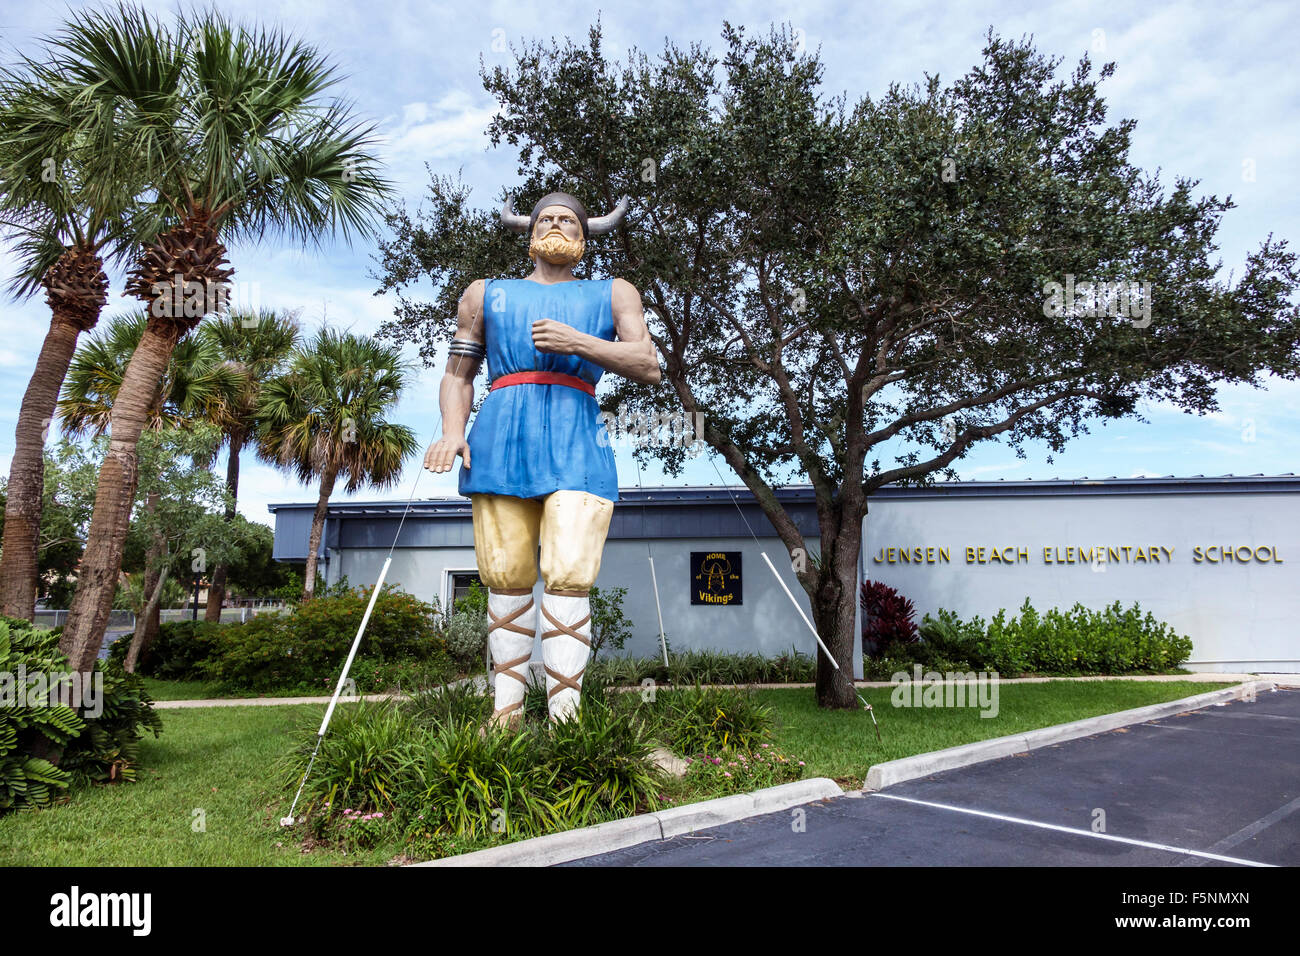 Jensen Beach Florida,Escuela Primaria,gigante Viking,mascota Jenguard,estatua de fibra de vidrio,FL150815041 Foto de stock